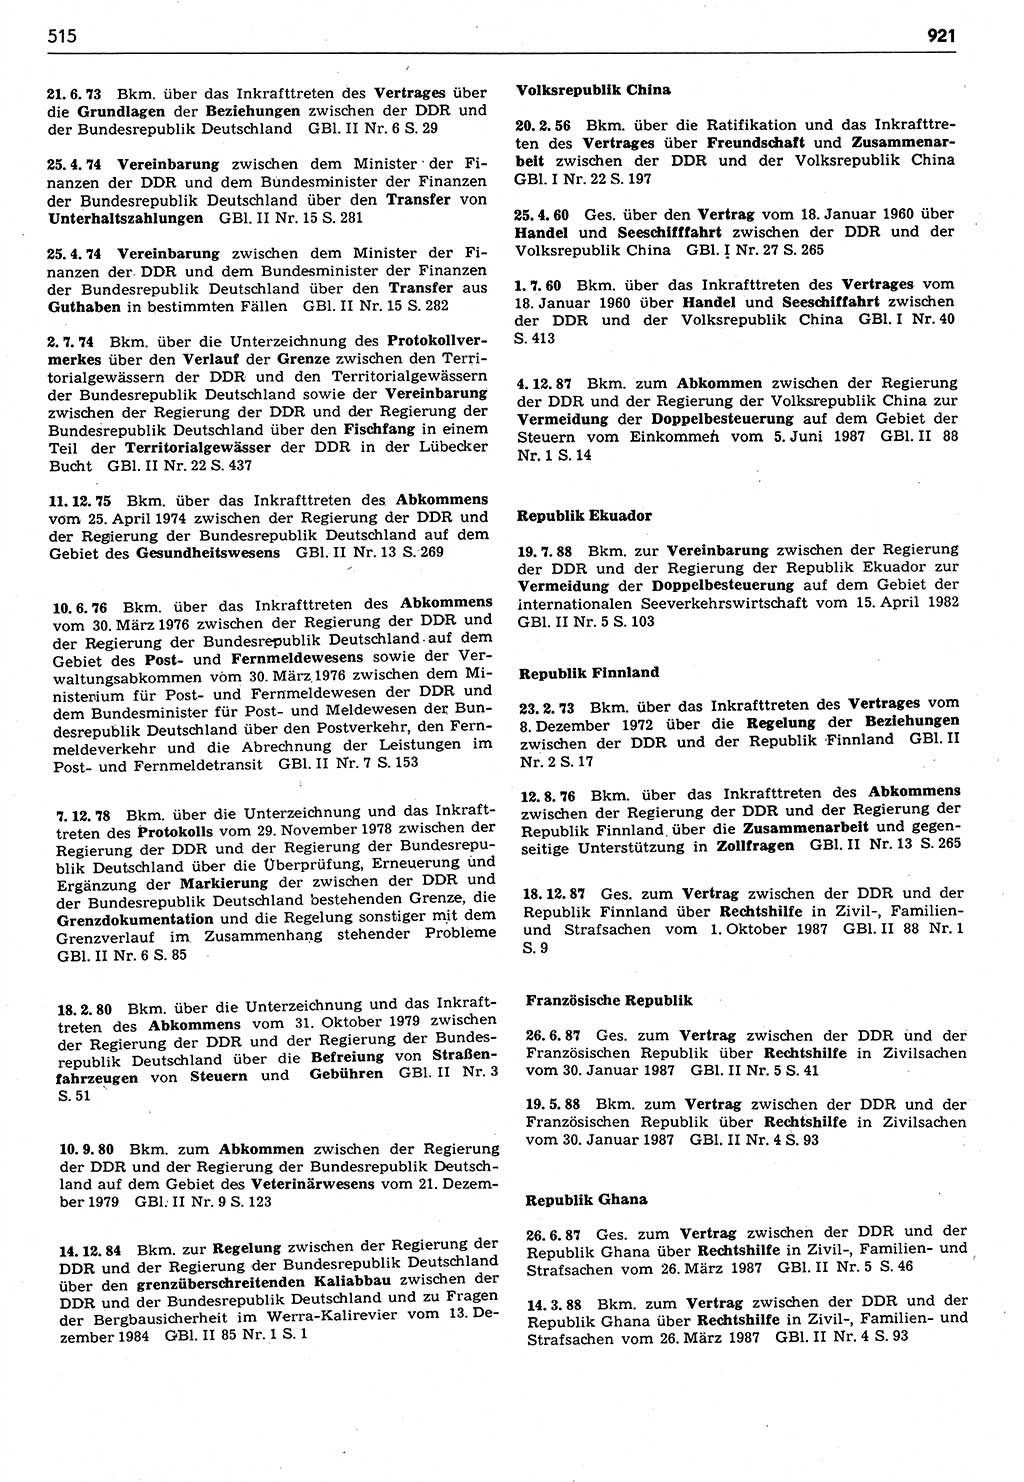 Das geltende Recht der Deutschen Demokratischen Republik (DDR) 1949-1988, Seite 515 (Gelt. R. DDR 1949-1988, S. 515)